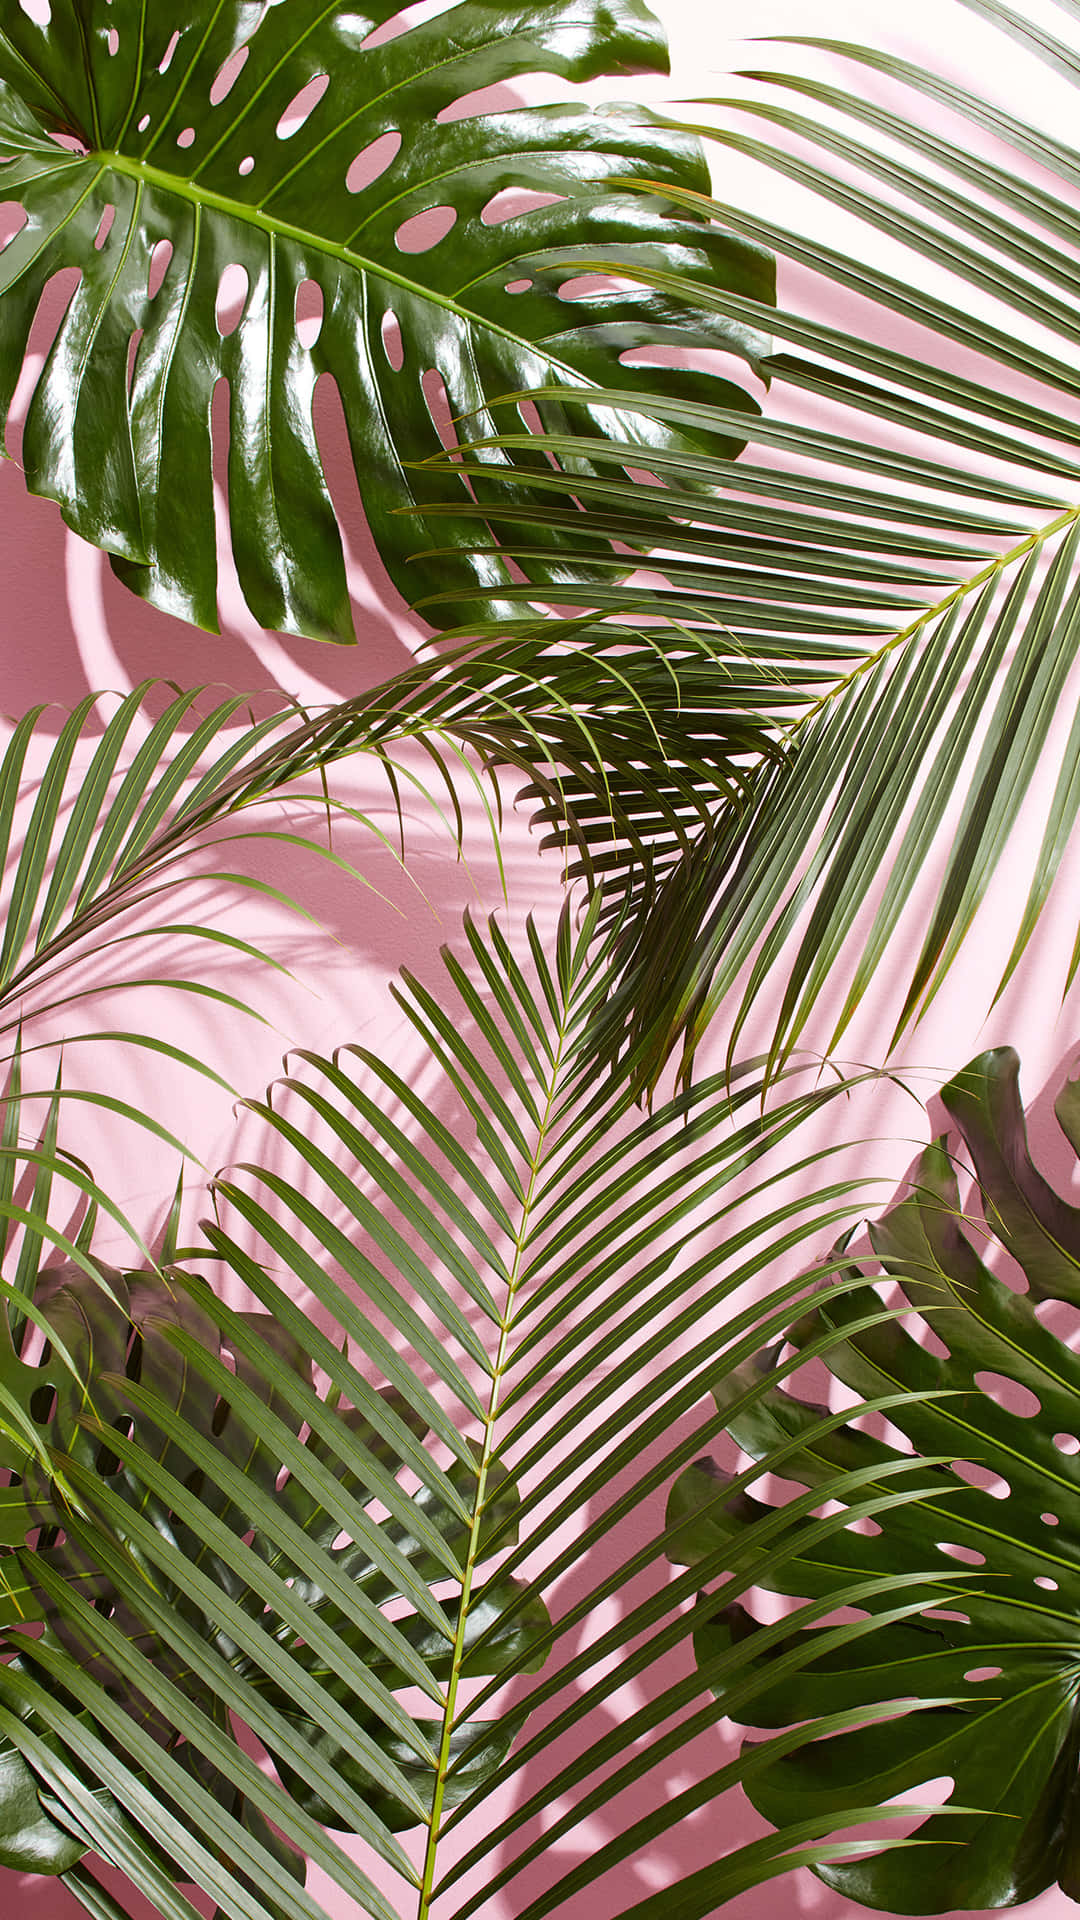 Nyd roen på denne sommerdag med udsigt til det løvfyldte grønne palmeblade. Wallpaper